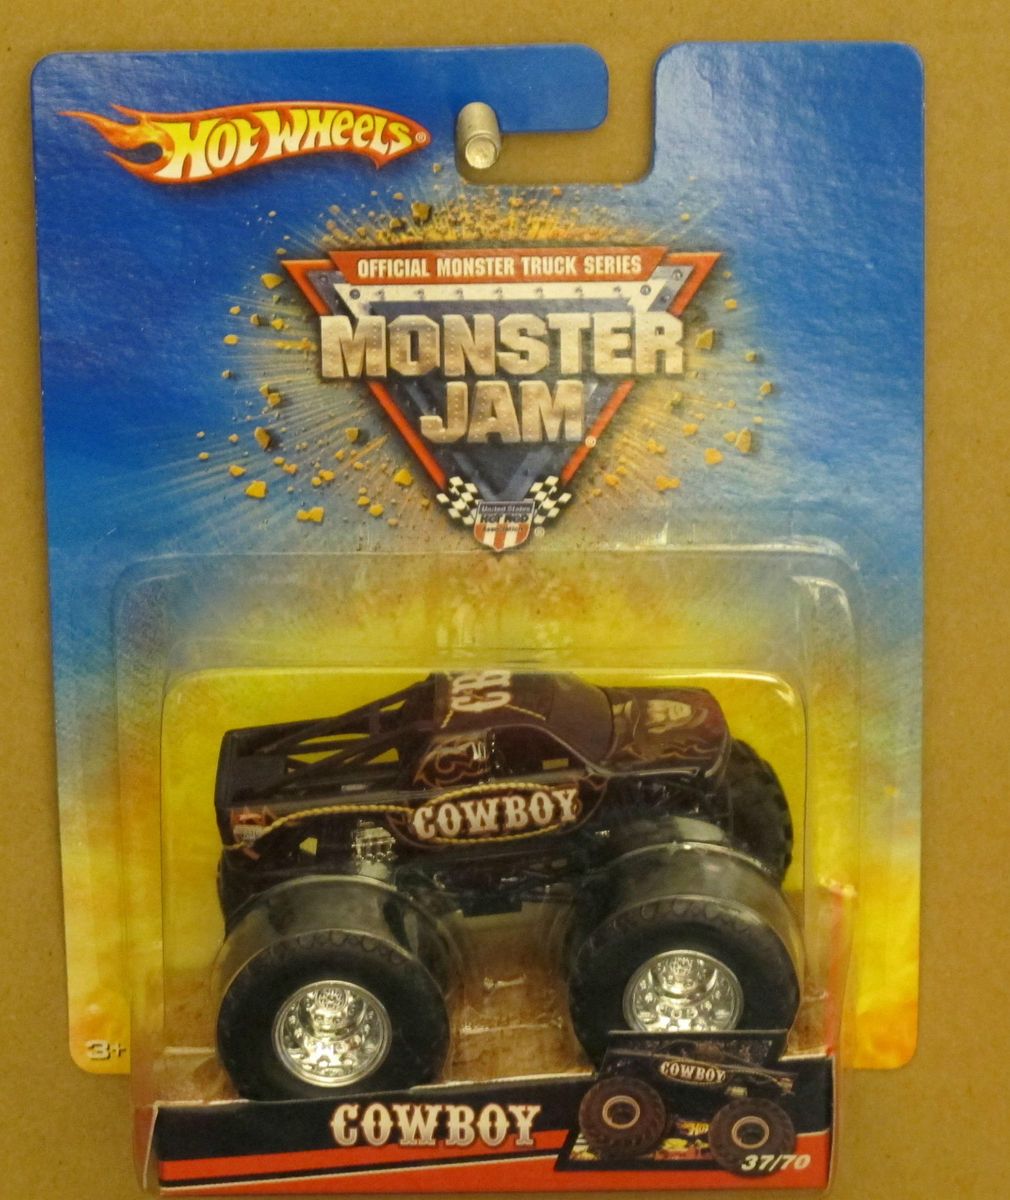 Hot Wheels Monster Jam Cowboy Older Card 1 64 Scale